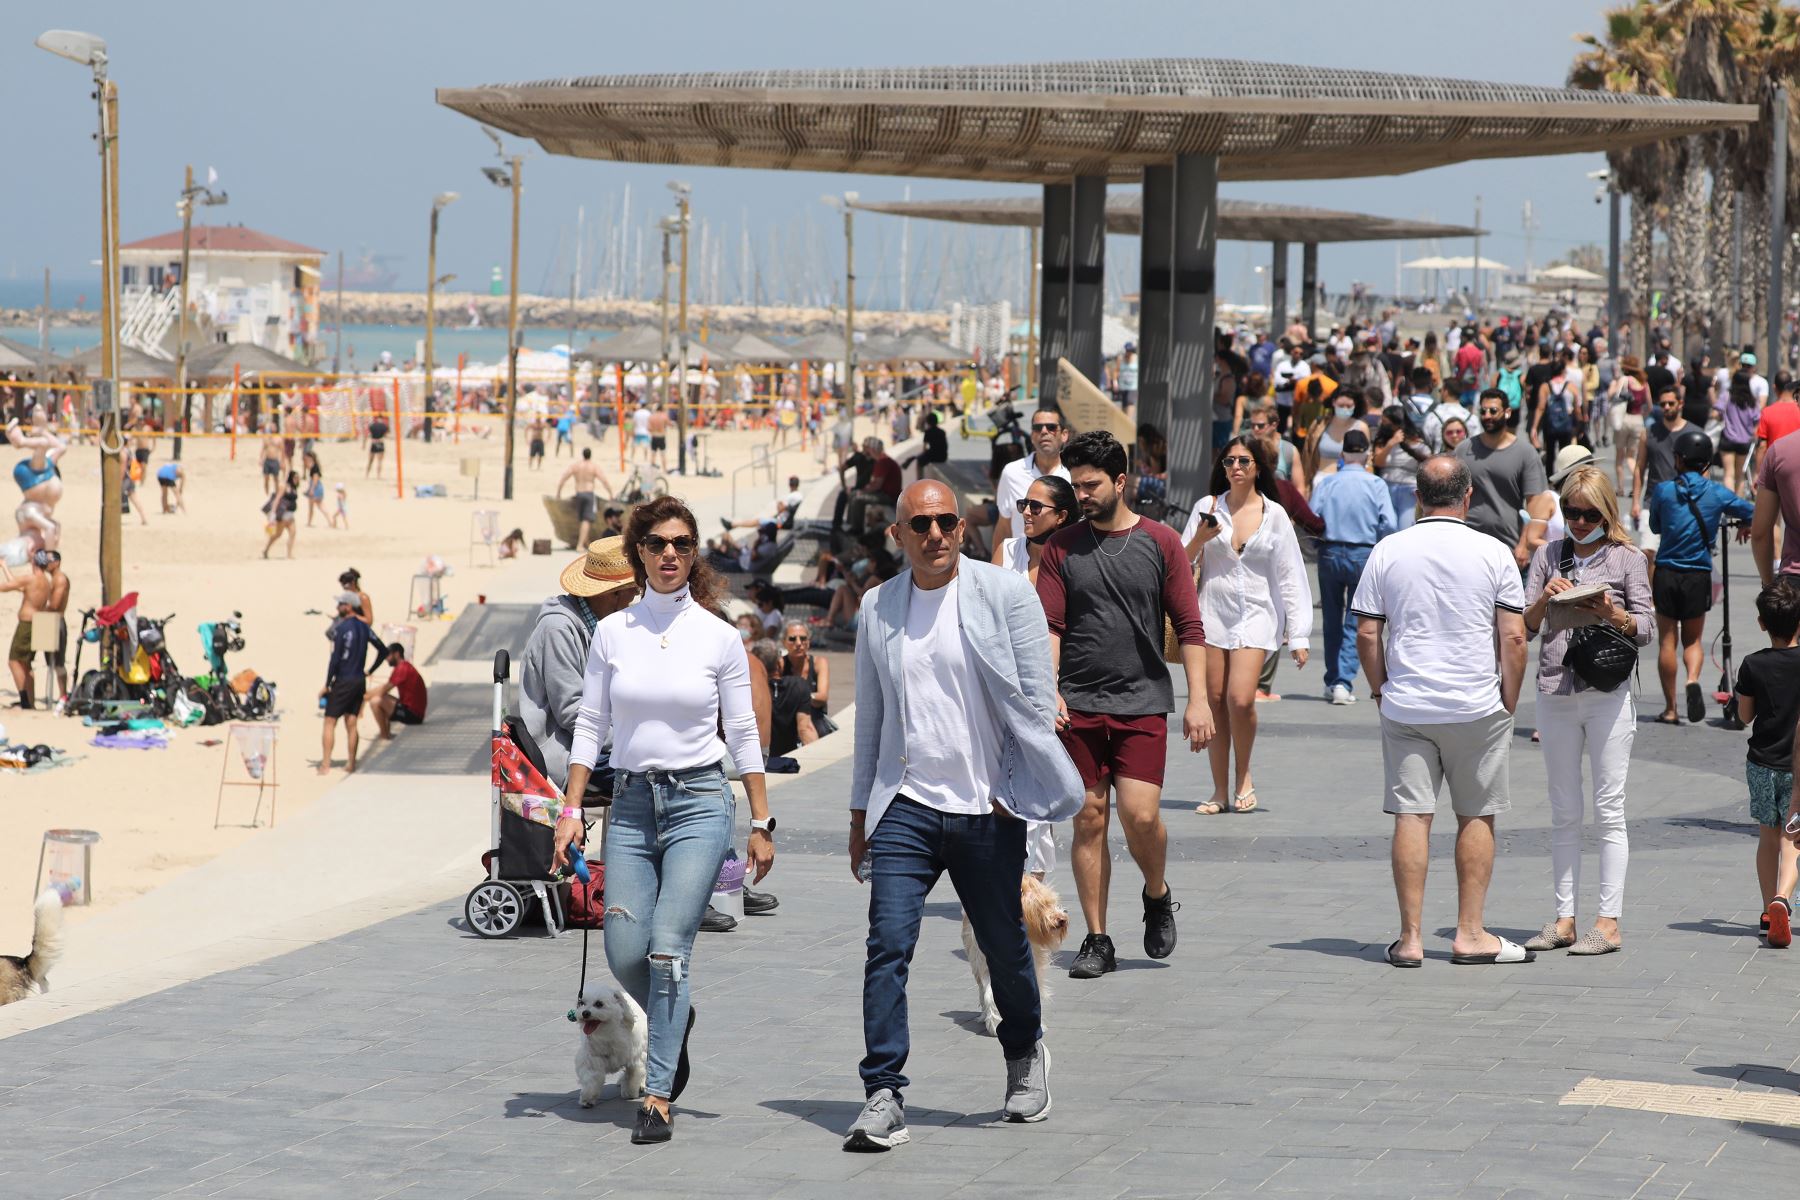 Personas sin mascarillas disfrutan del día en la playa de Tel Aviv, el 17 de abril de 2021. Israel pone fin al uso obligatorio de mascarillas al aire tras una exitosa campaña de vacunación. Foto: EFE